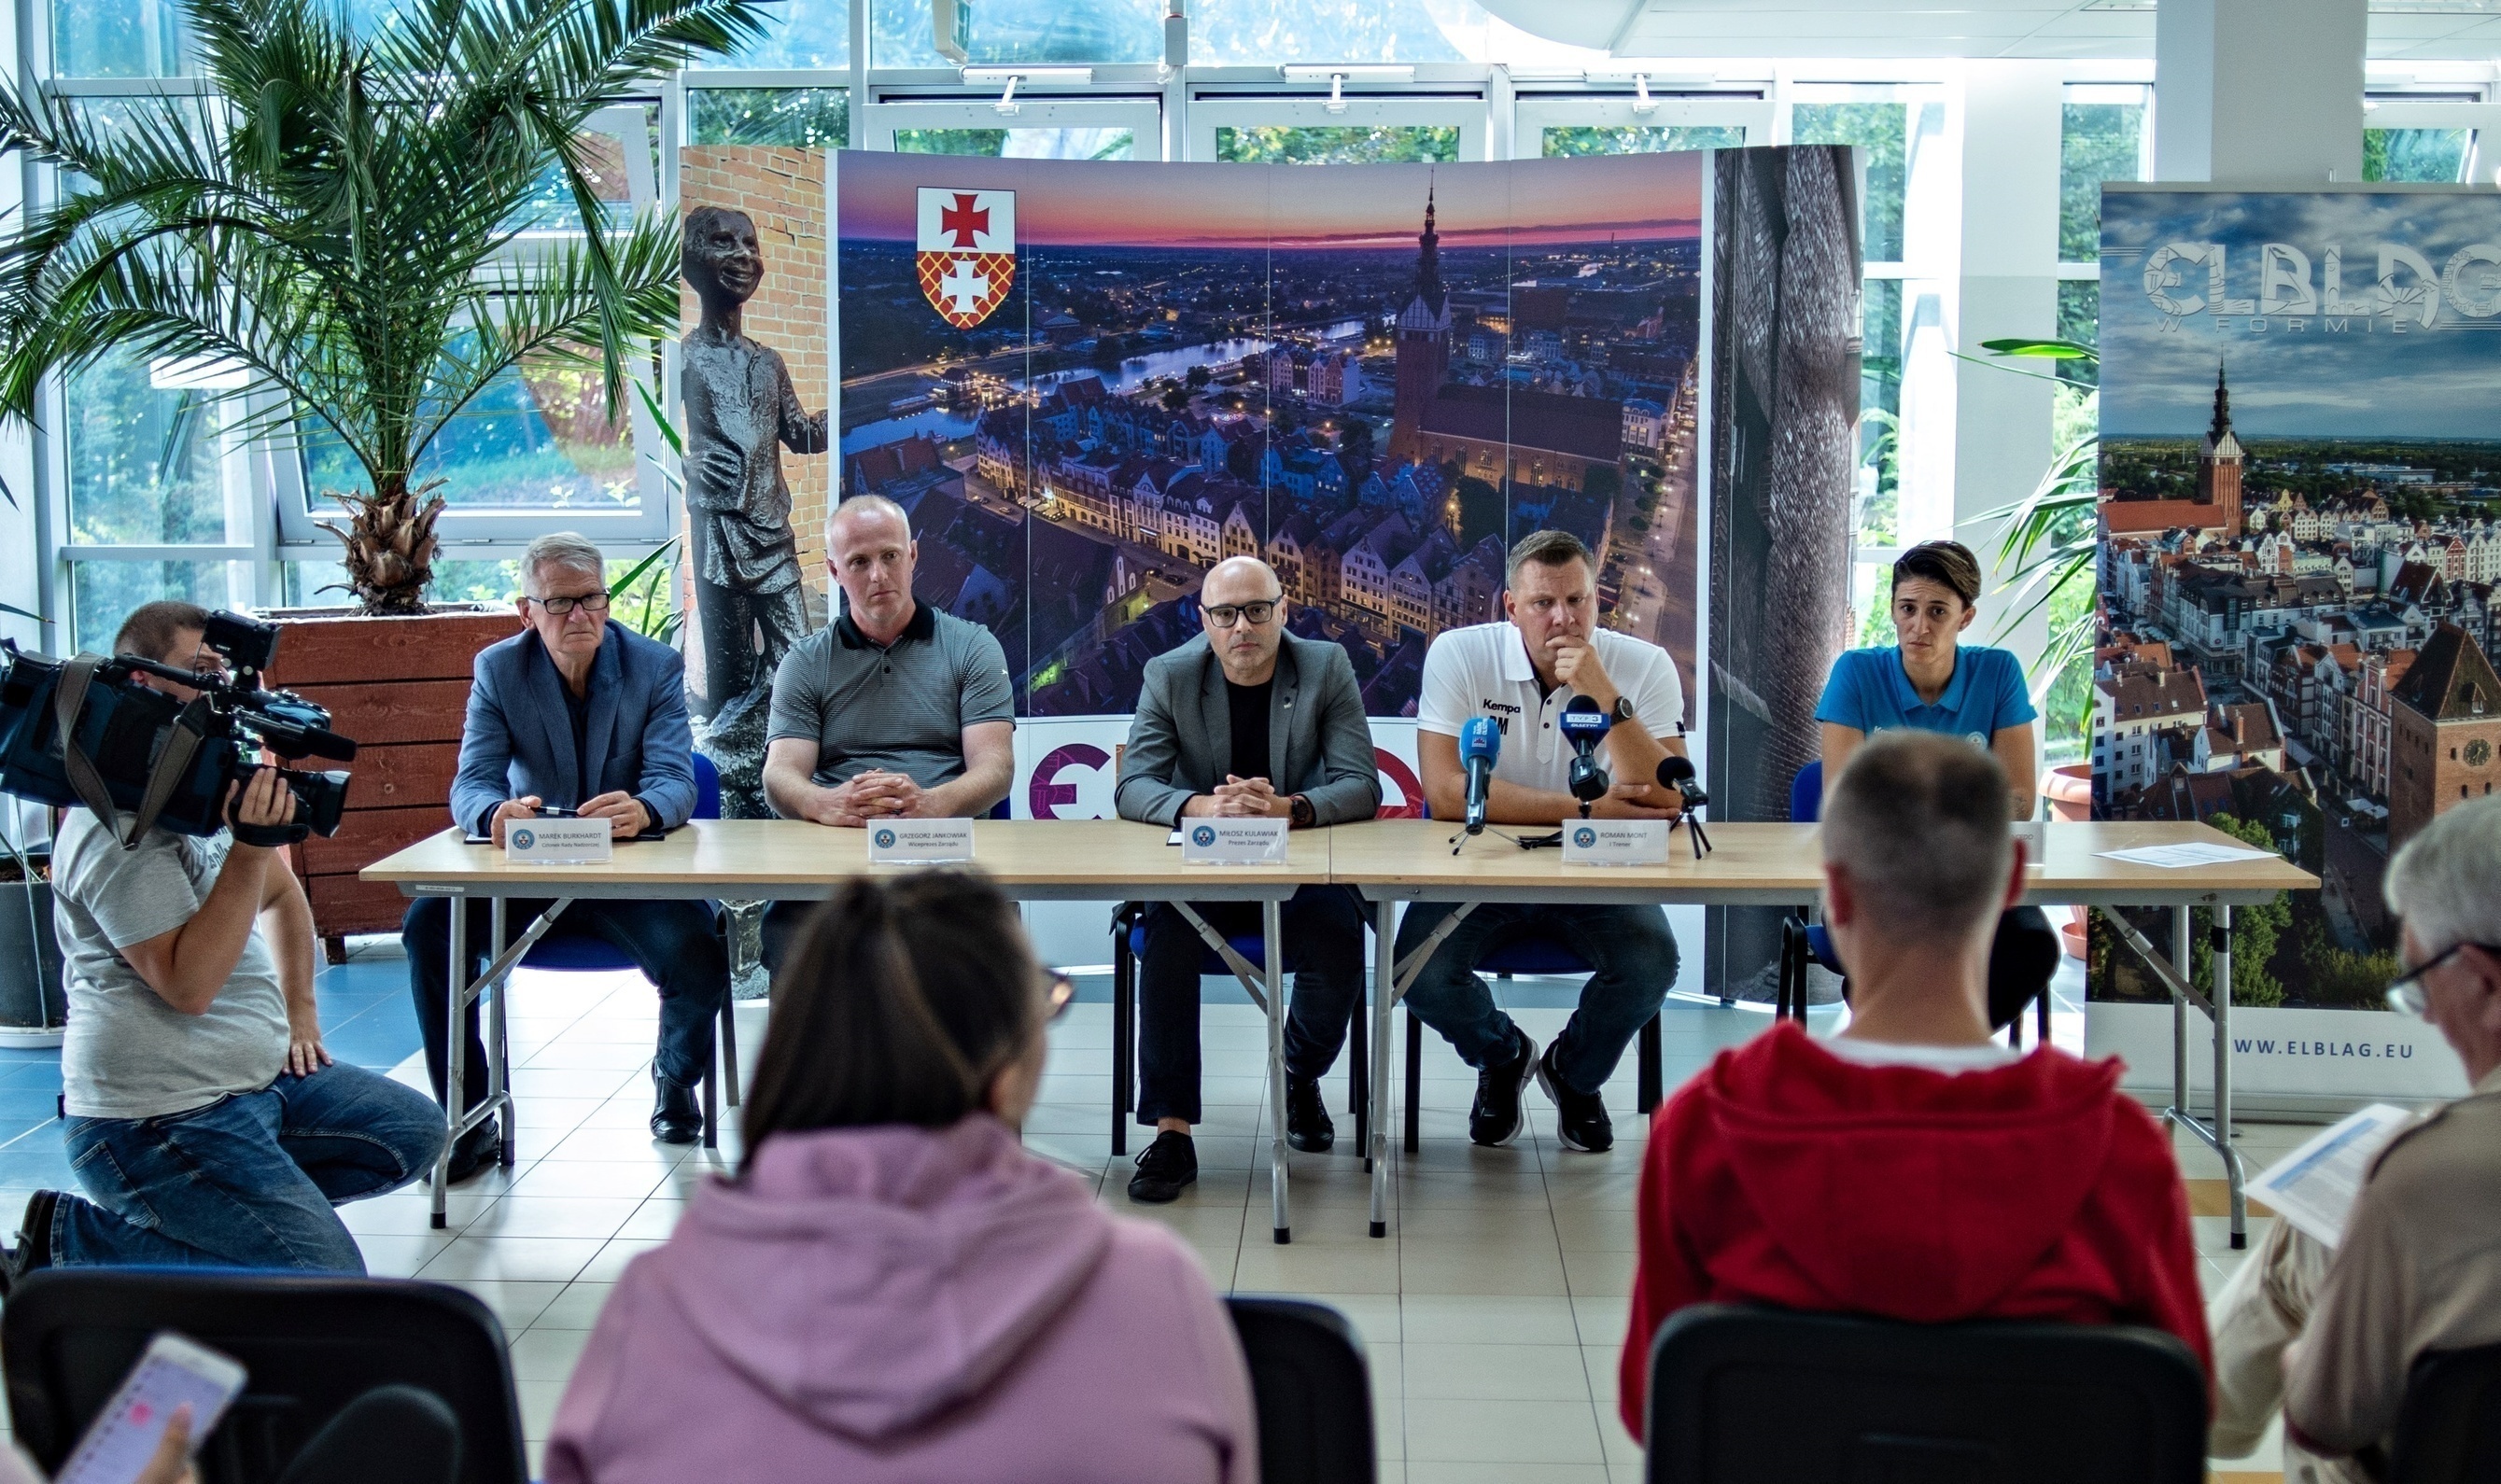 Elbląg, W konferencji udział wzięli: Marek Burkhardt, Grzegorz Jankowiak, Miłosz Kulawiak, Roman Mont oraz Vitoria Macedo